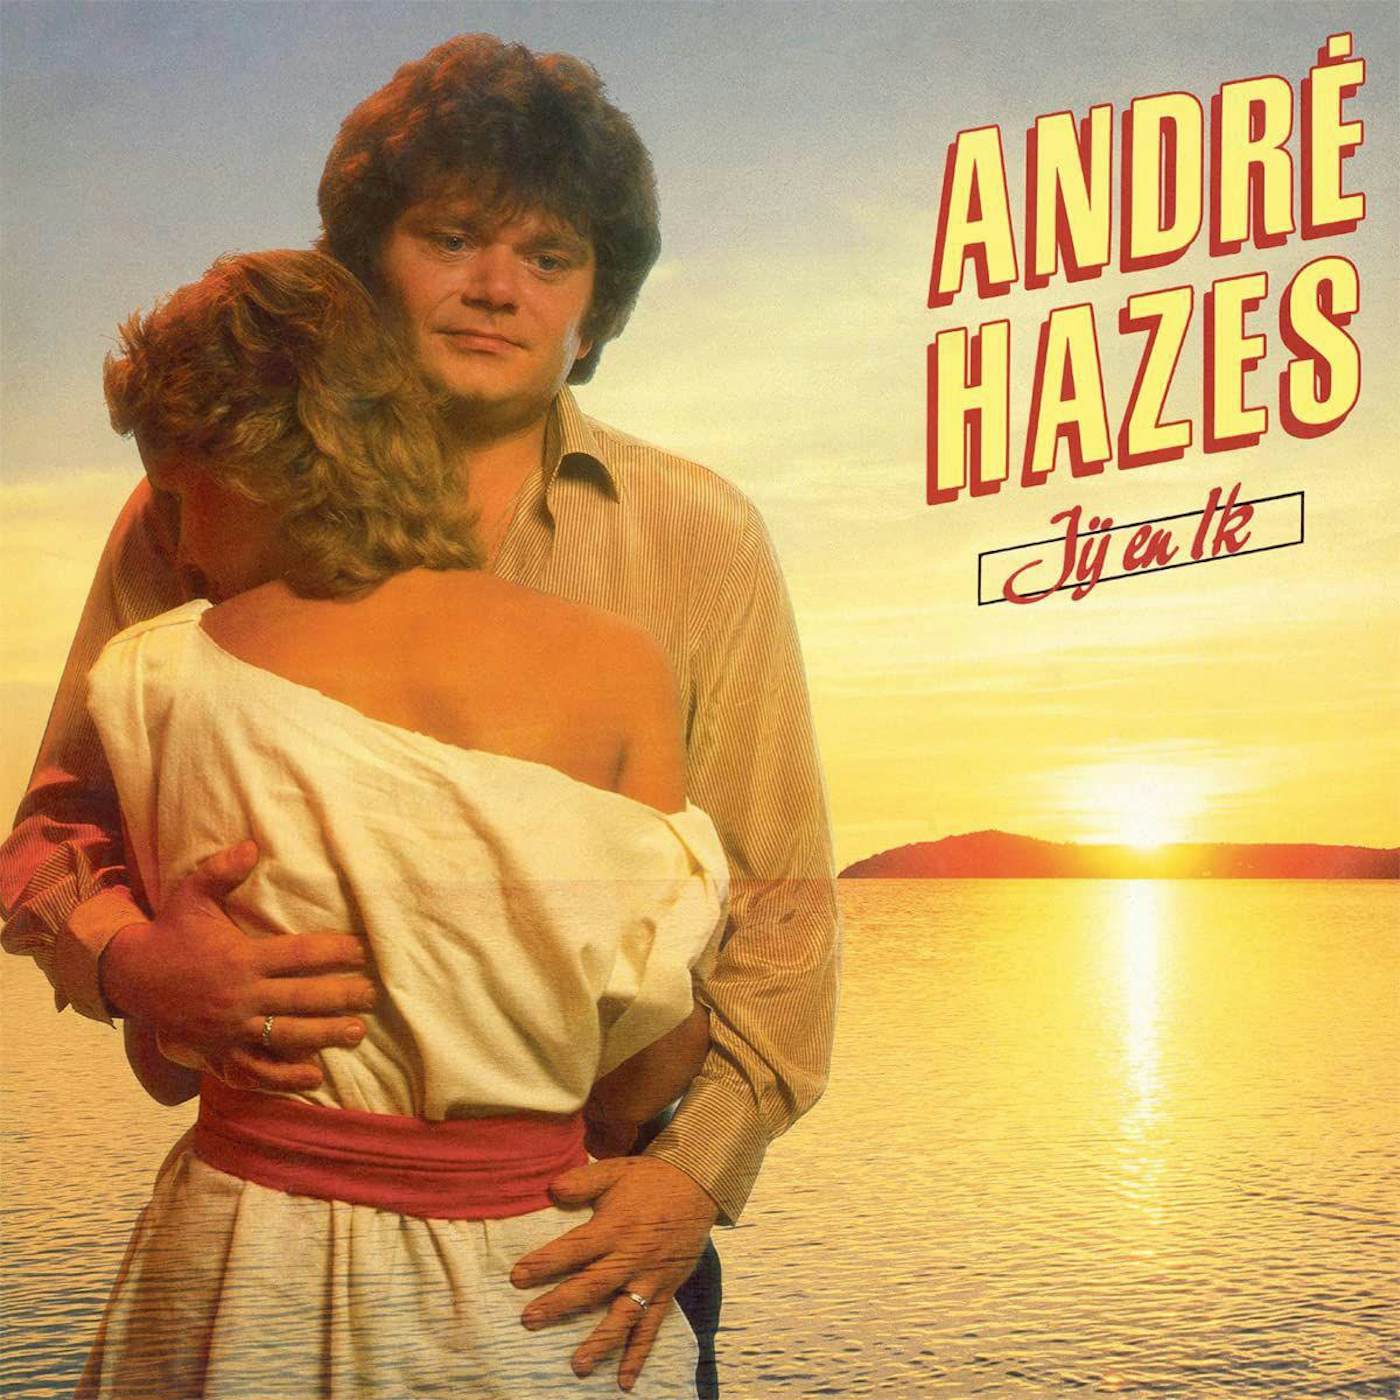 Andre Hazes Jij En Ik Vinyl Record